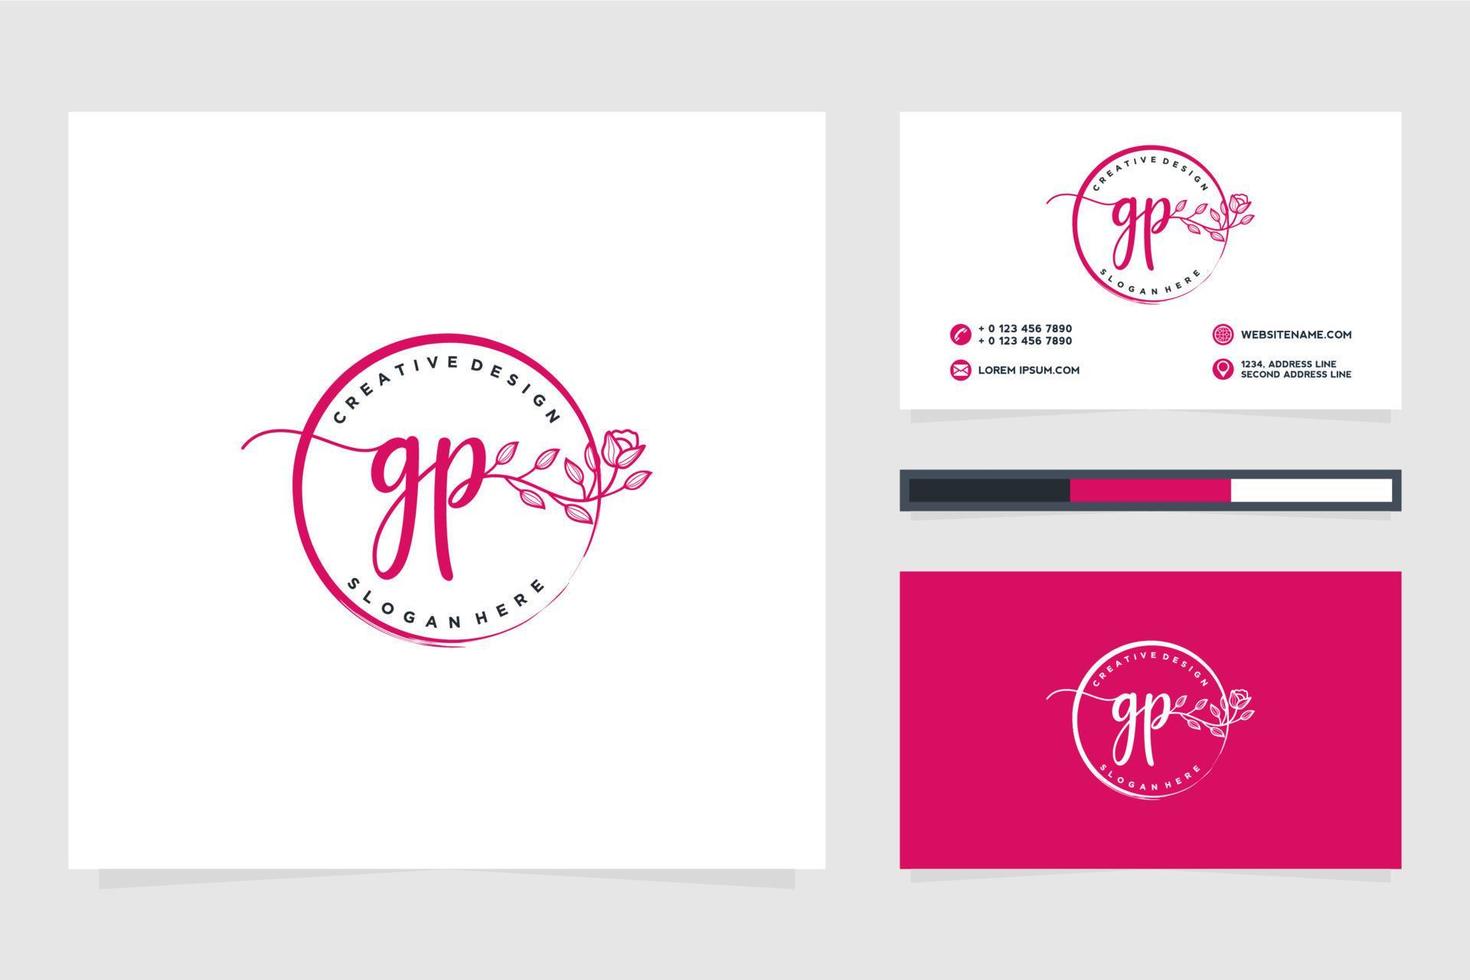 coleções iniciais de logotipo feminino gp e vetor premium de modelo de cartão de visita